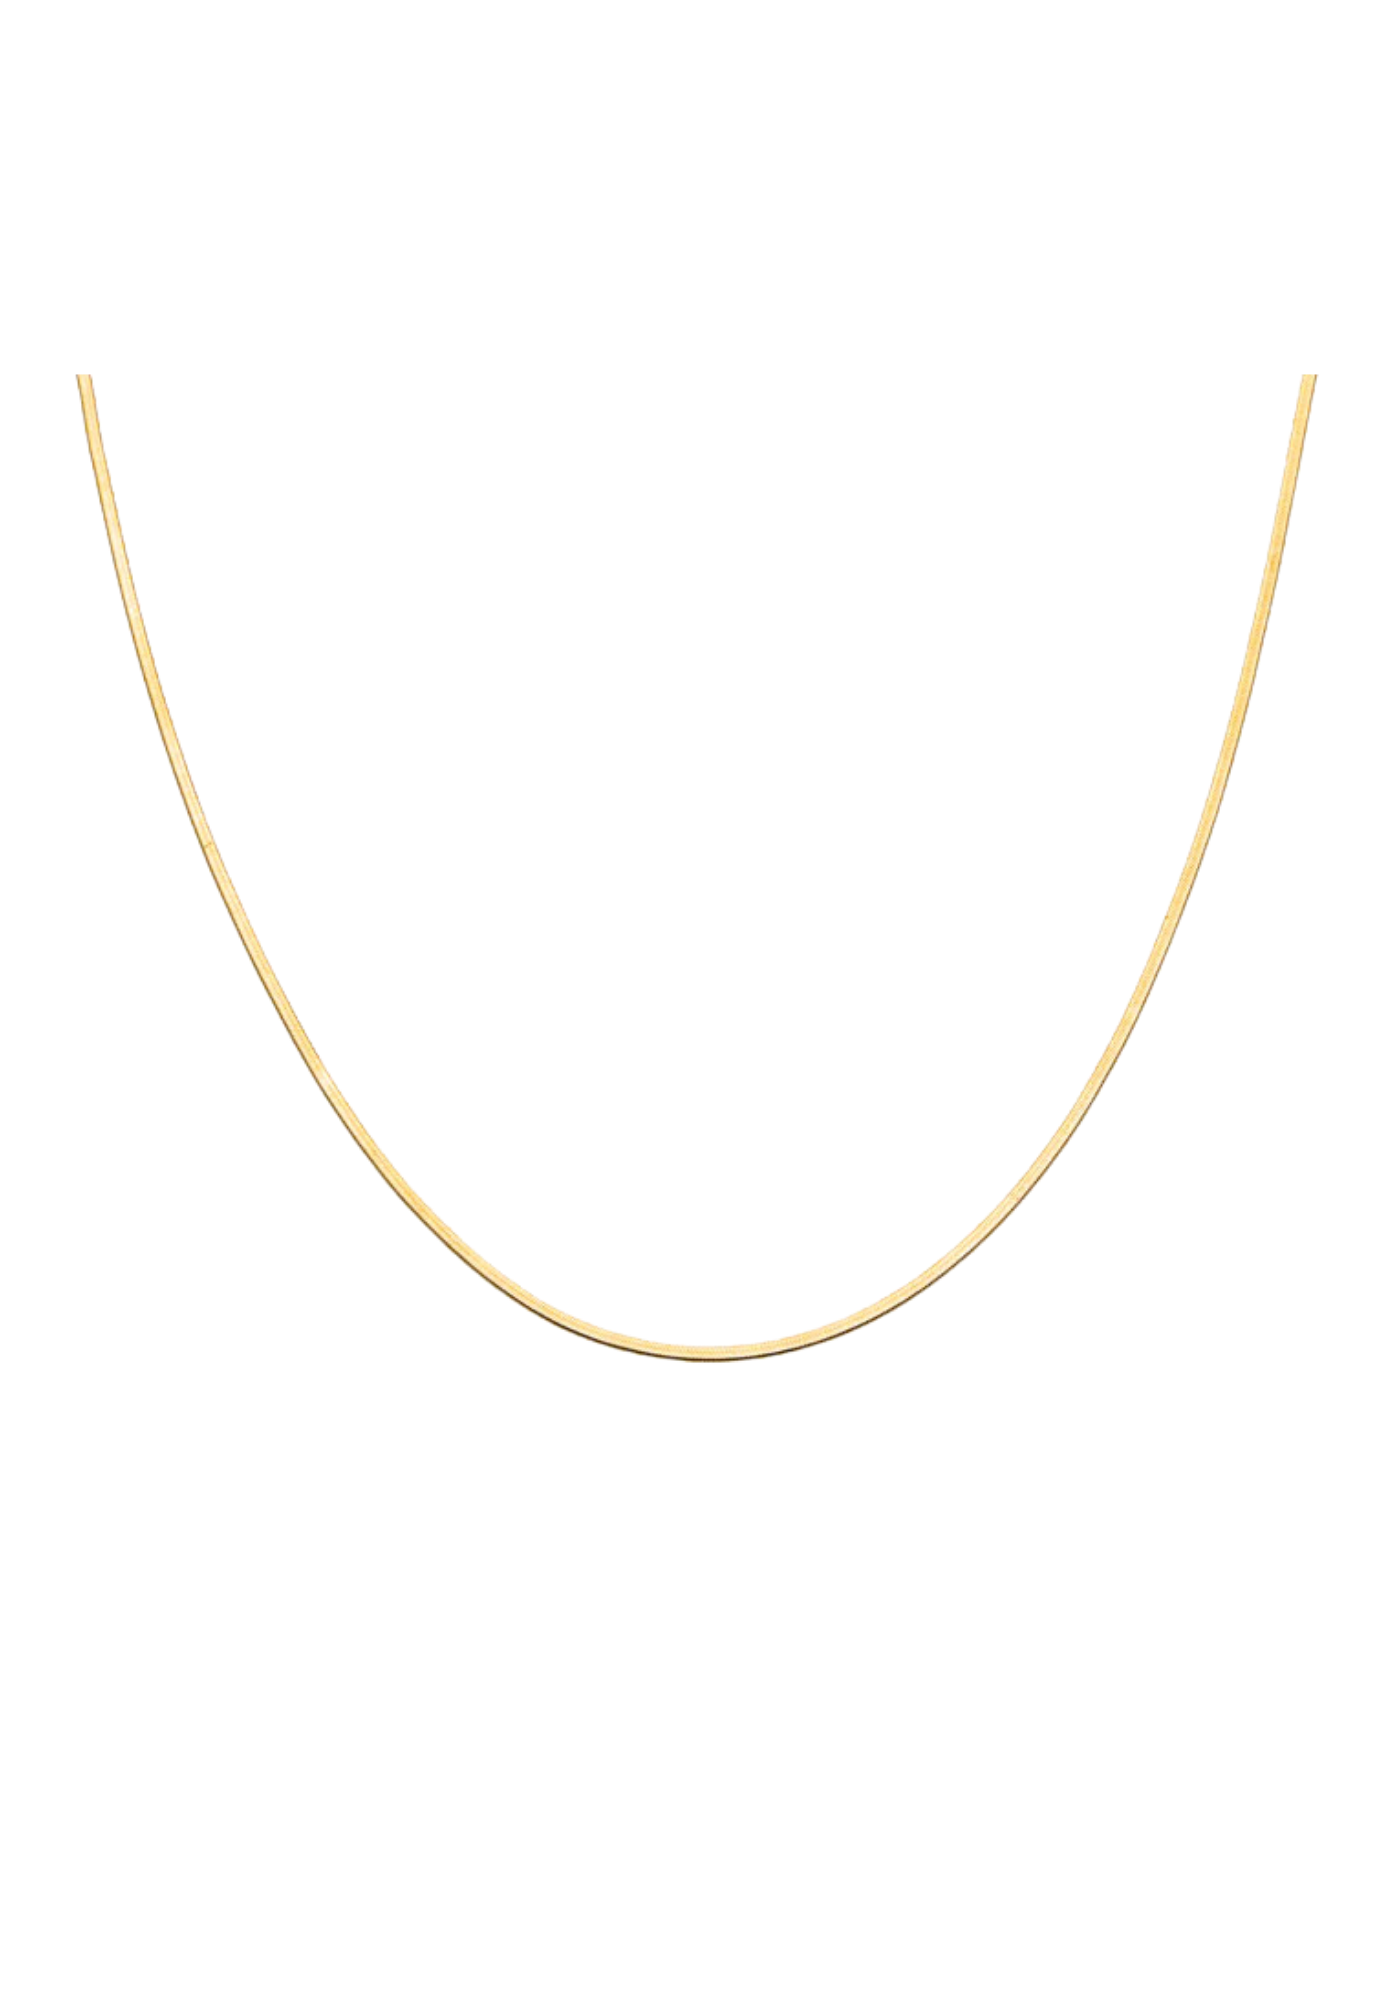 Micro Herringbone Necklace